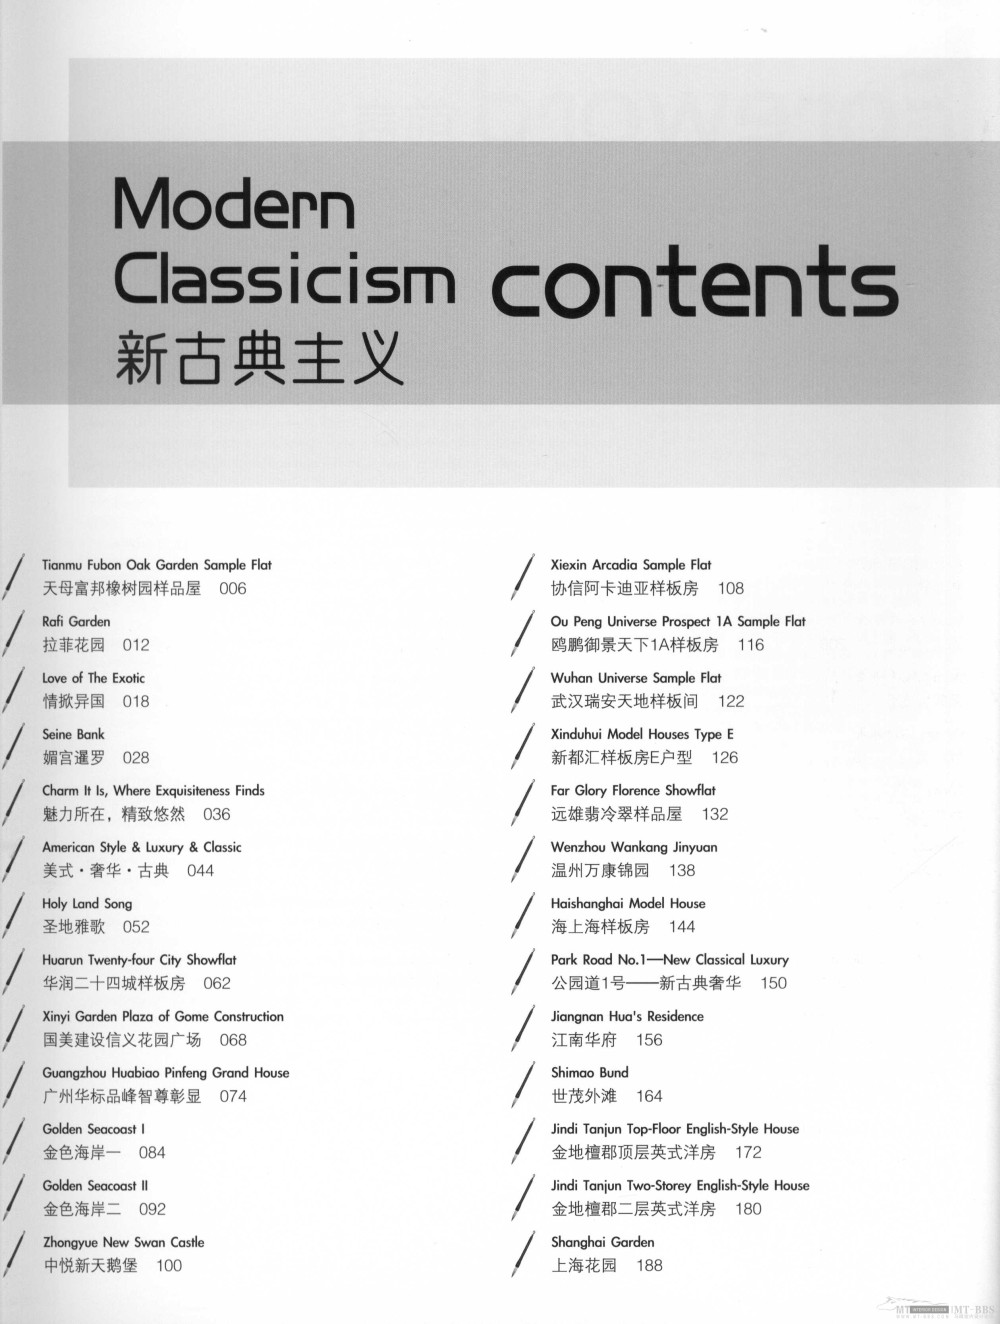 新古典主义 Modern Classicism 2011年8月出_13671144854 0003.jpg